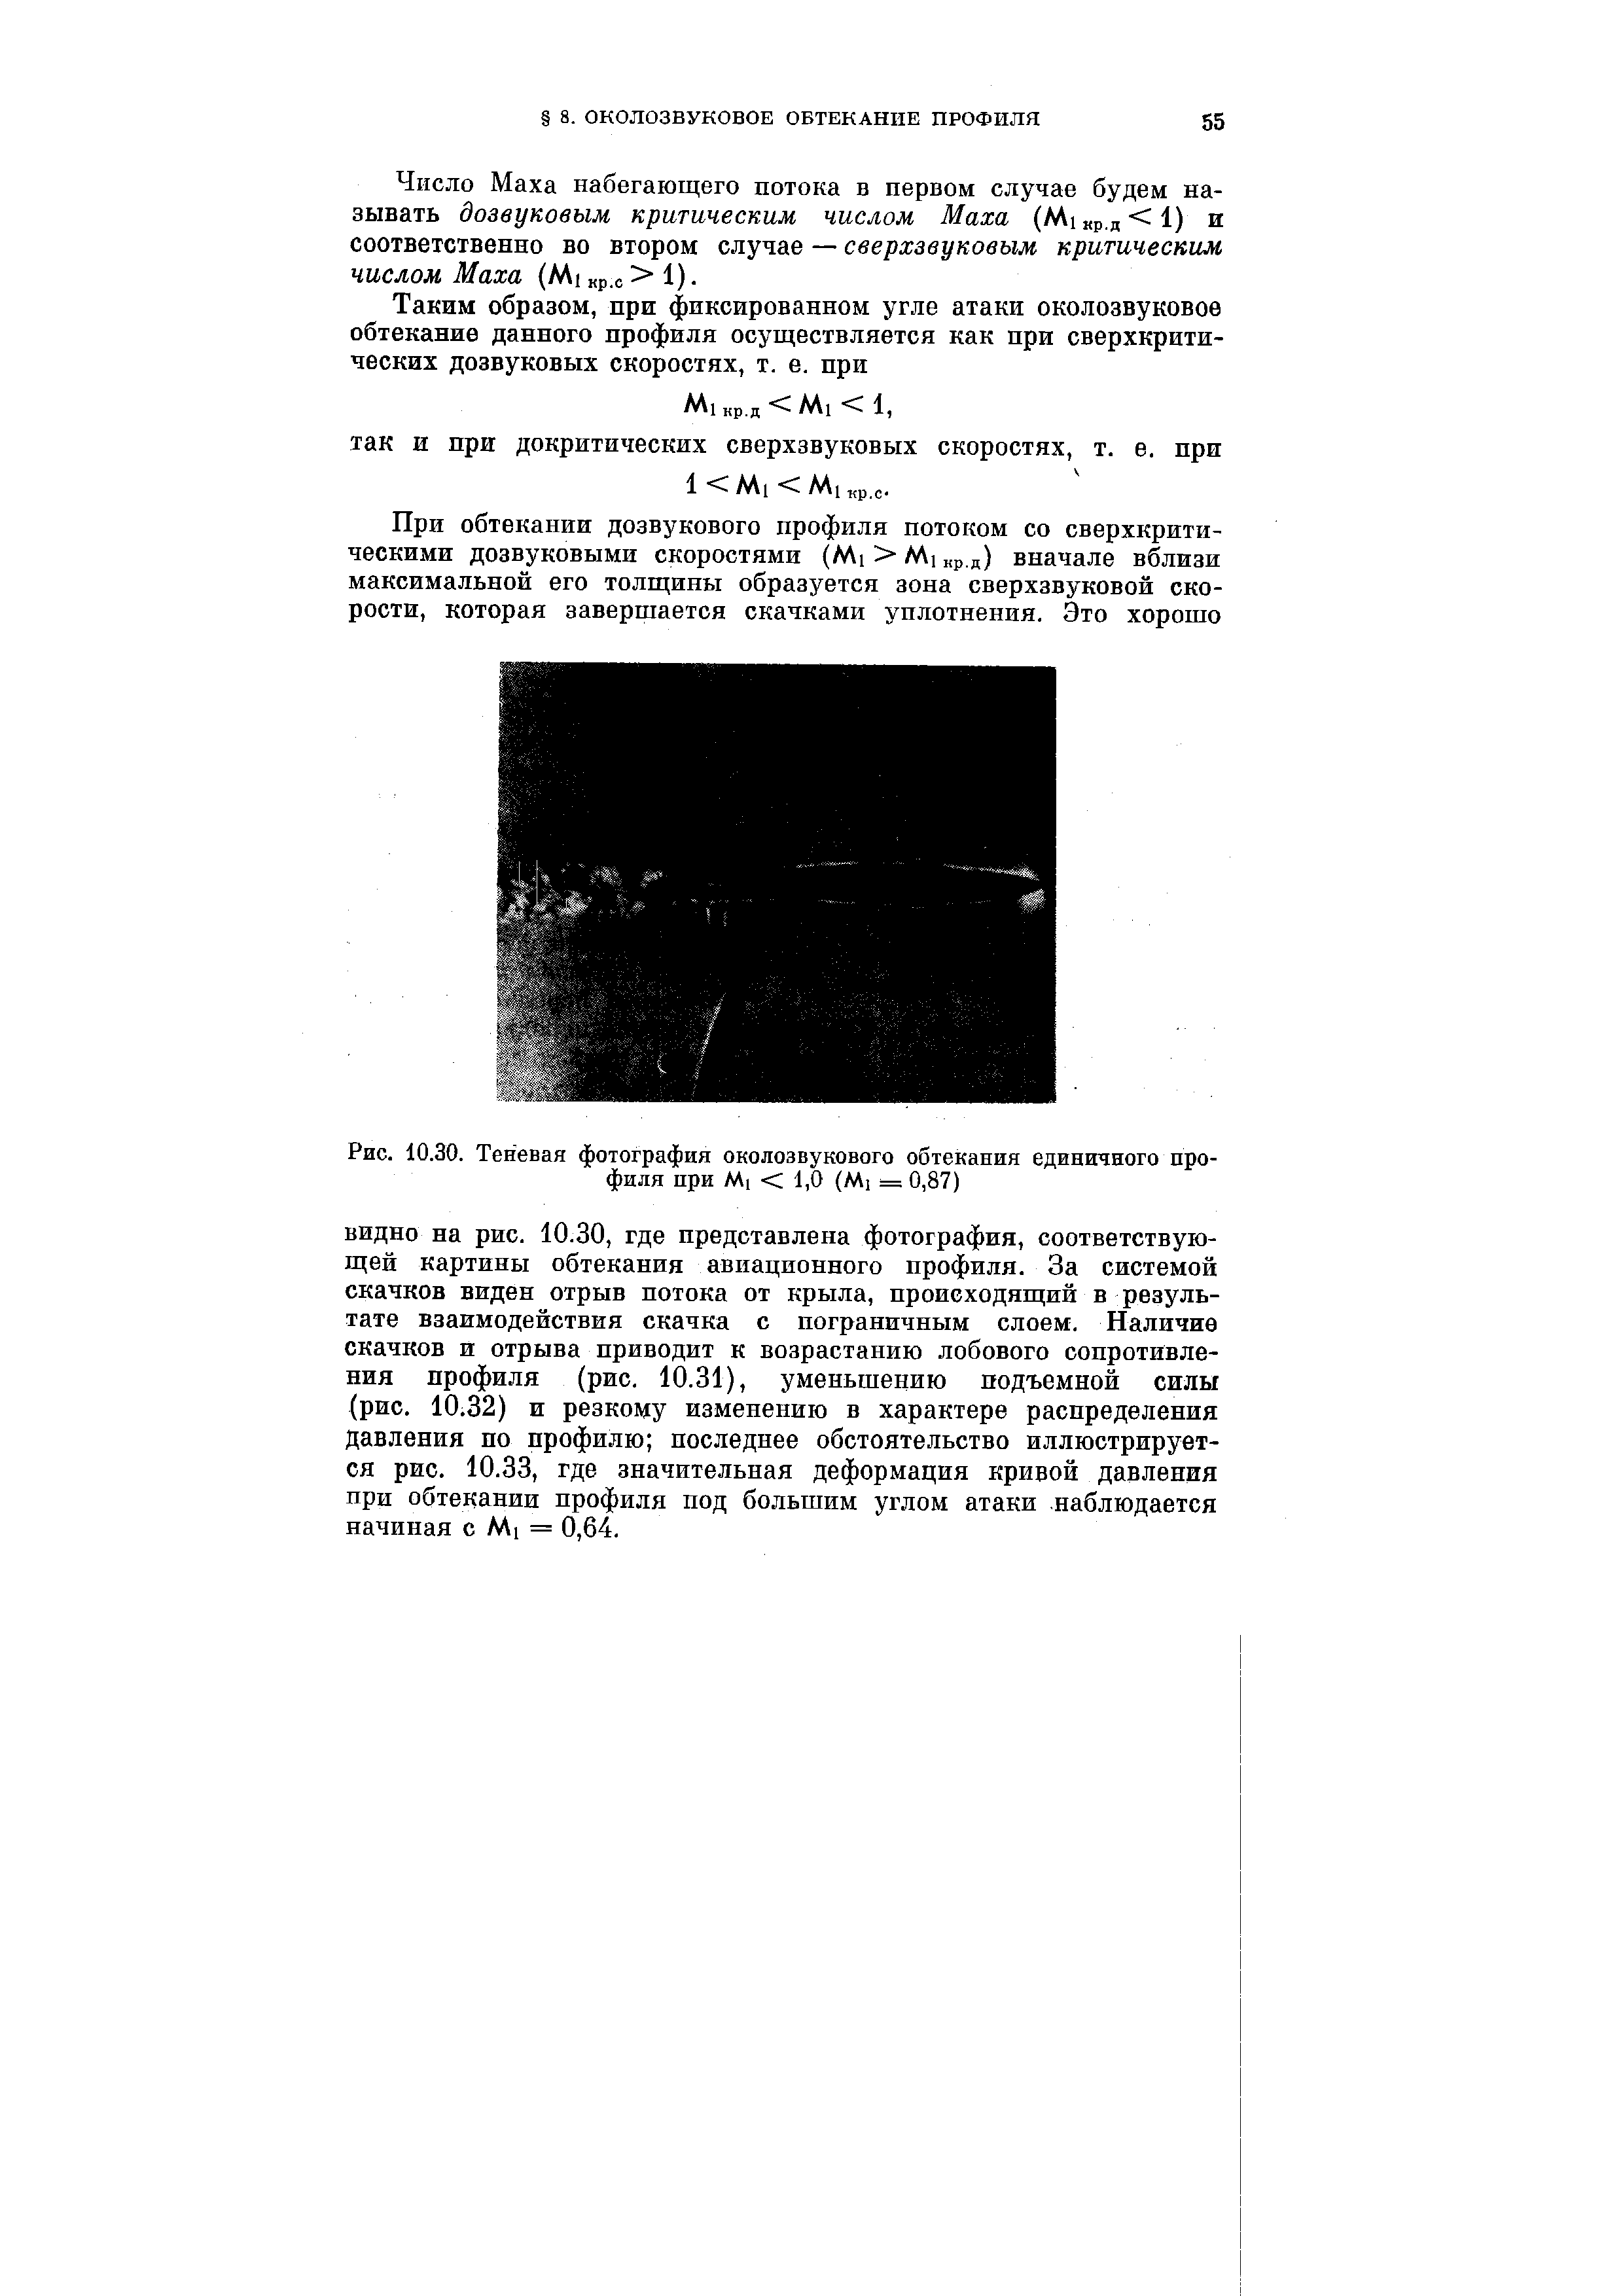 Рис. 10.30. Теневая фотография околозвукового обтекания единичного профиля при М1 < 1,0 (М] = 0,87)
